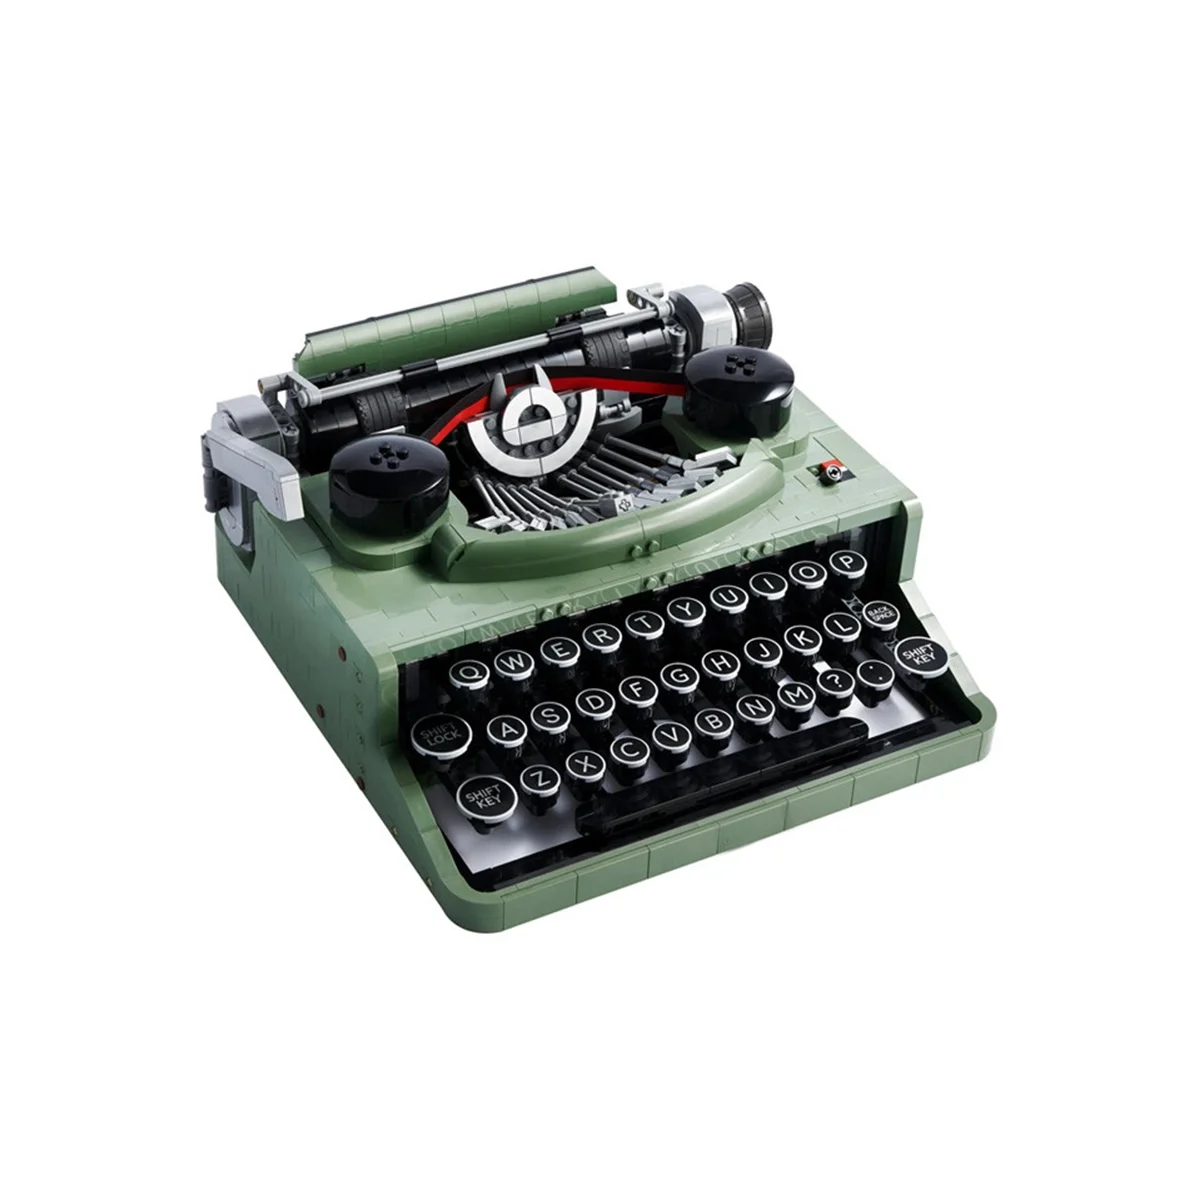 Retro Typewriter Blocks Brick Marking Machine Keyboard over 12 Years Old Ki - £159.46 GBP